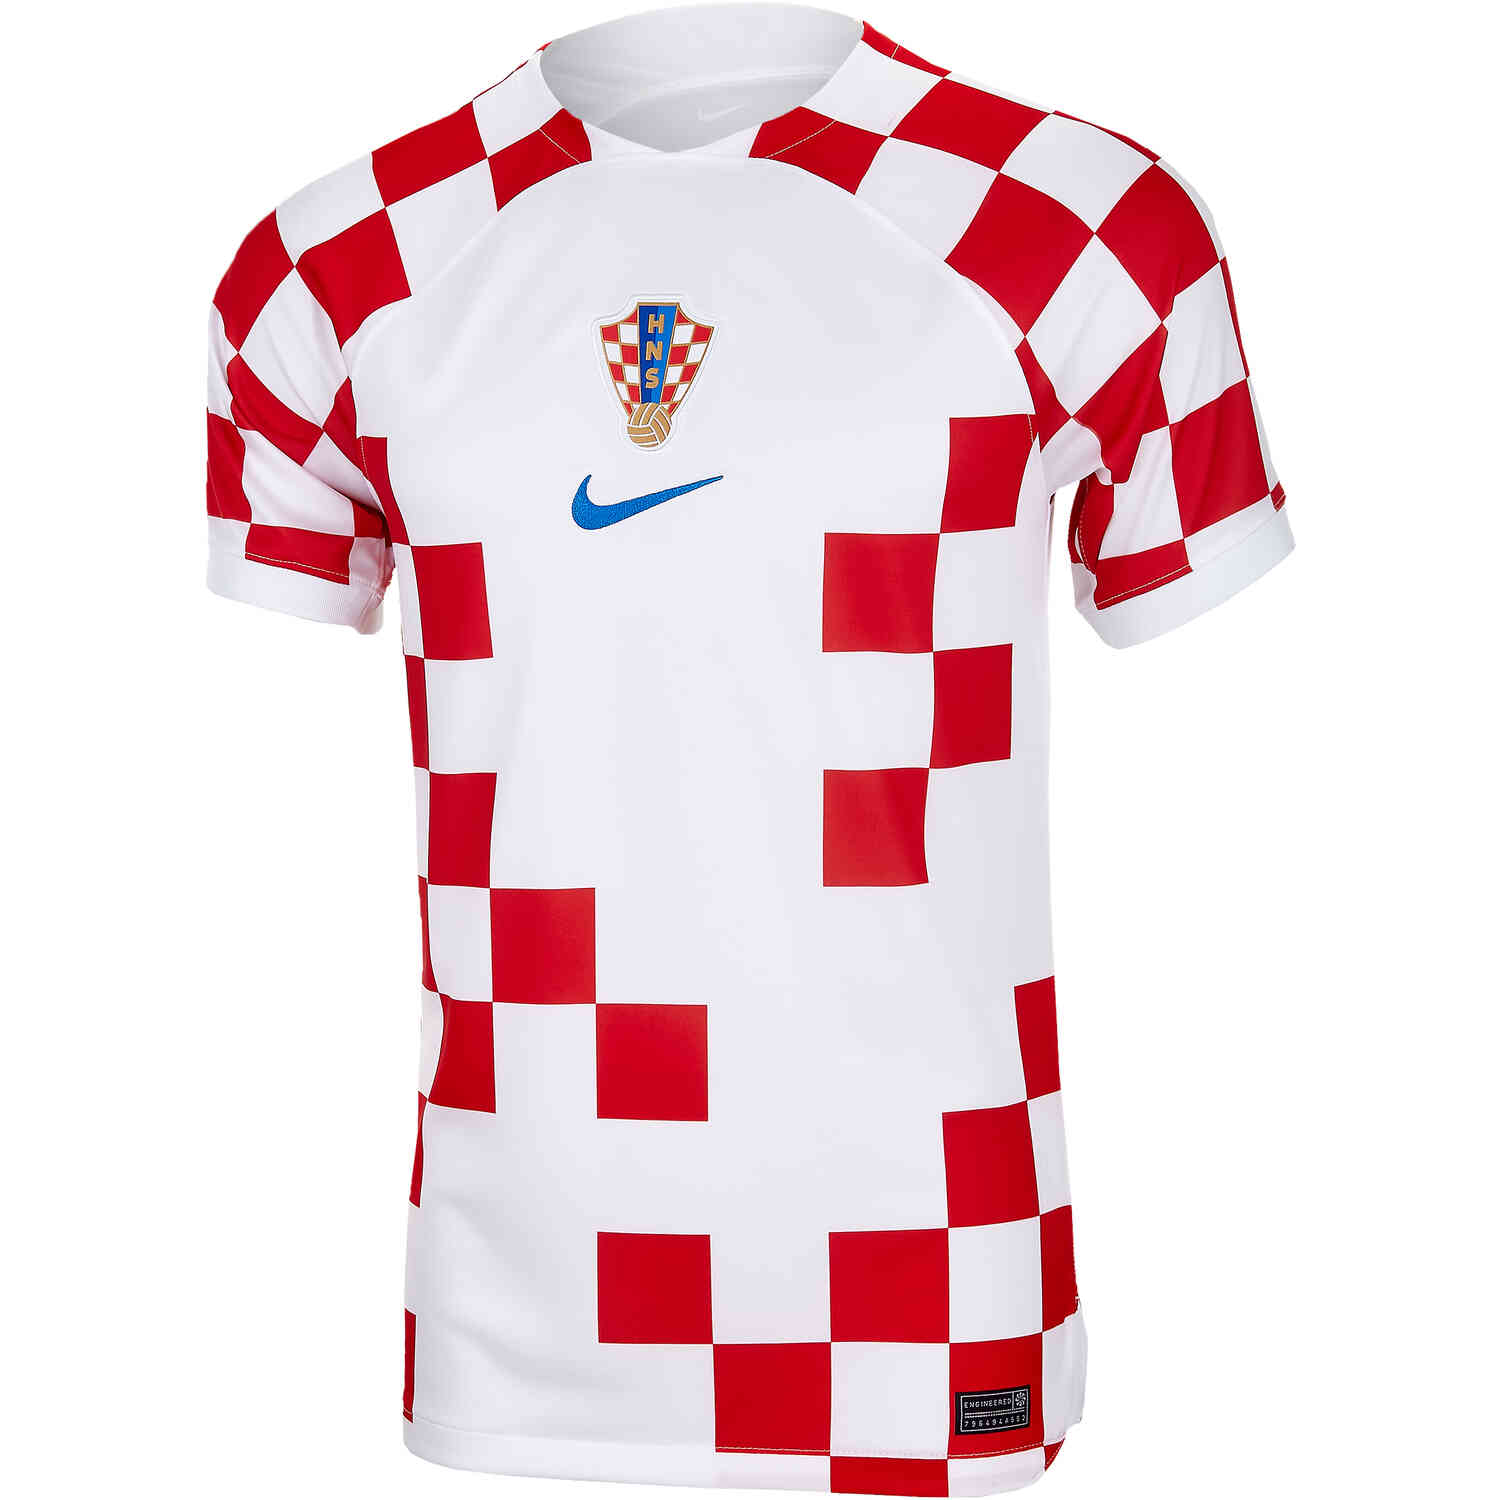 Desanimarse cualquier cosa Respiración 2022 Nike Croatia Home Jersey - SoccerPro